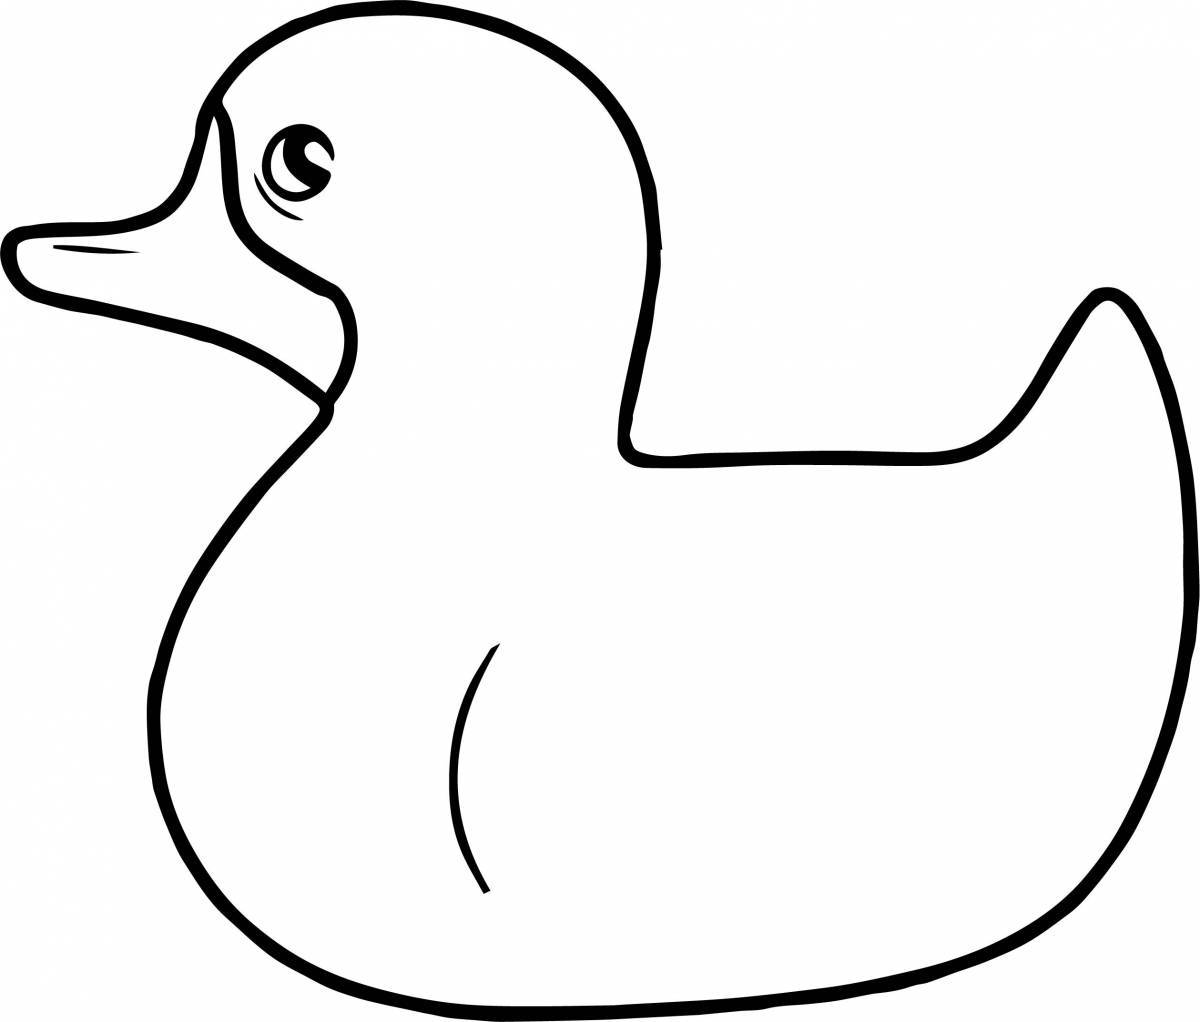 Юмористическая дымковская утка раскраска